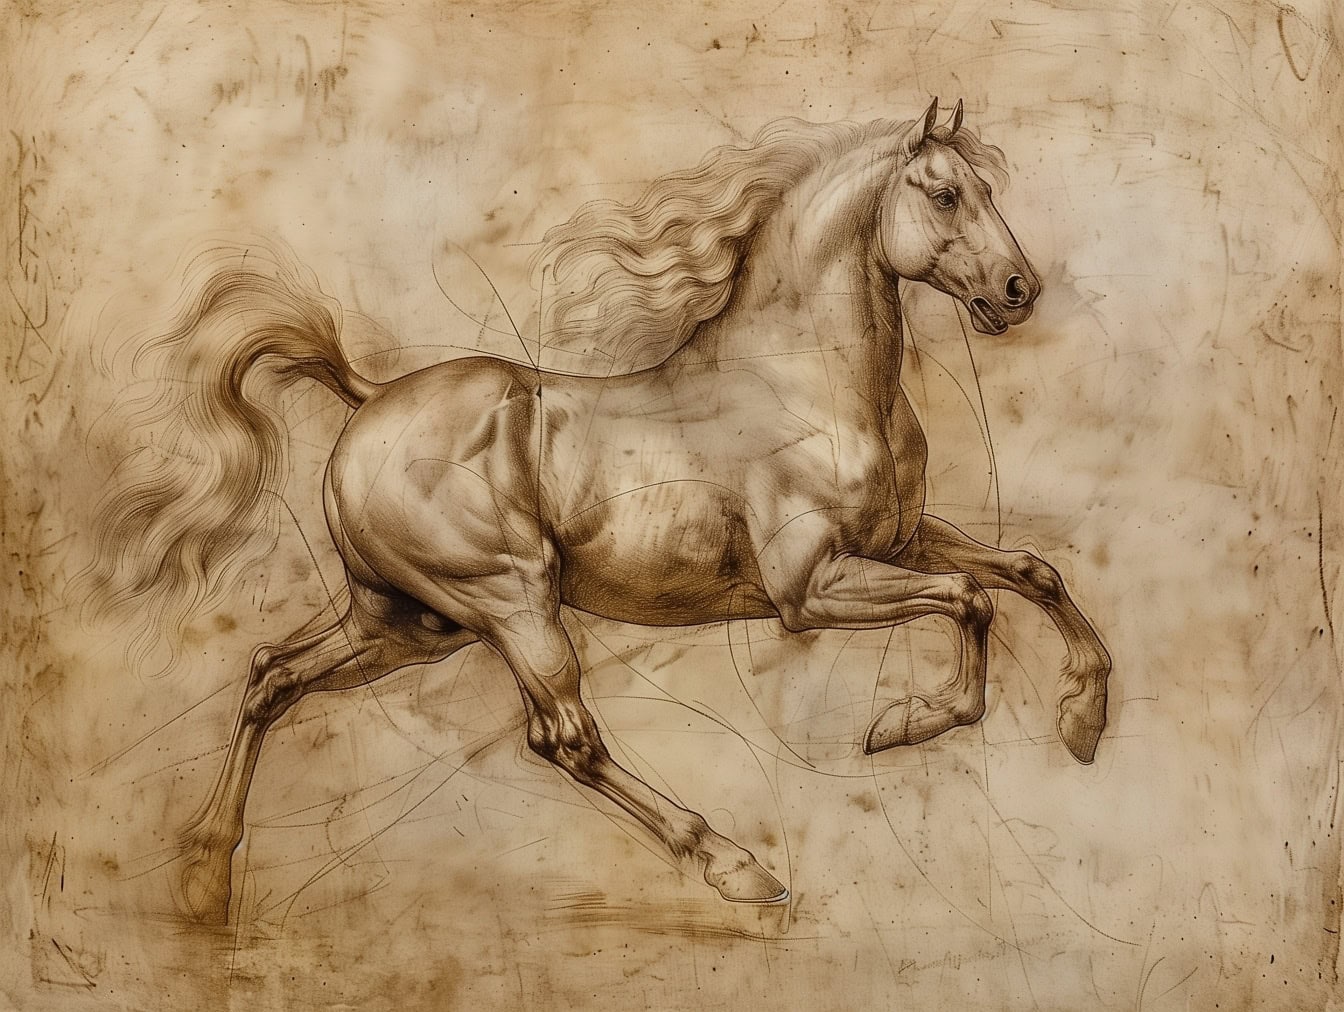 Графитовый рисунок лошади с длинной гривой в стиле средневекового художественного эскиза на старой желтоватой бумаге